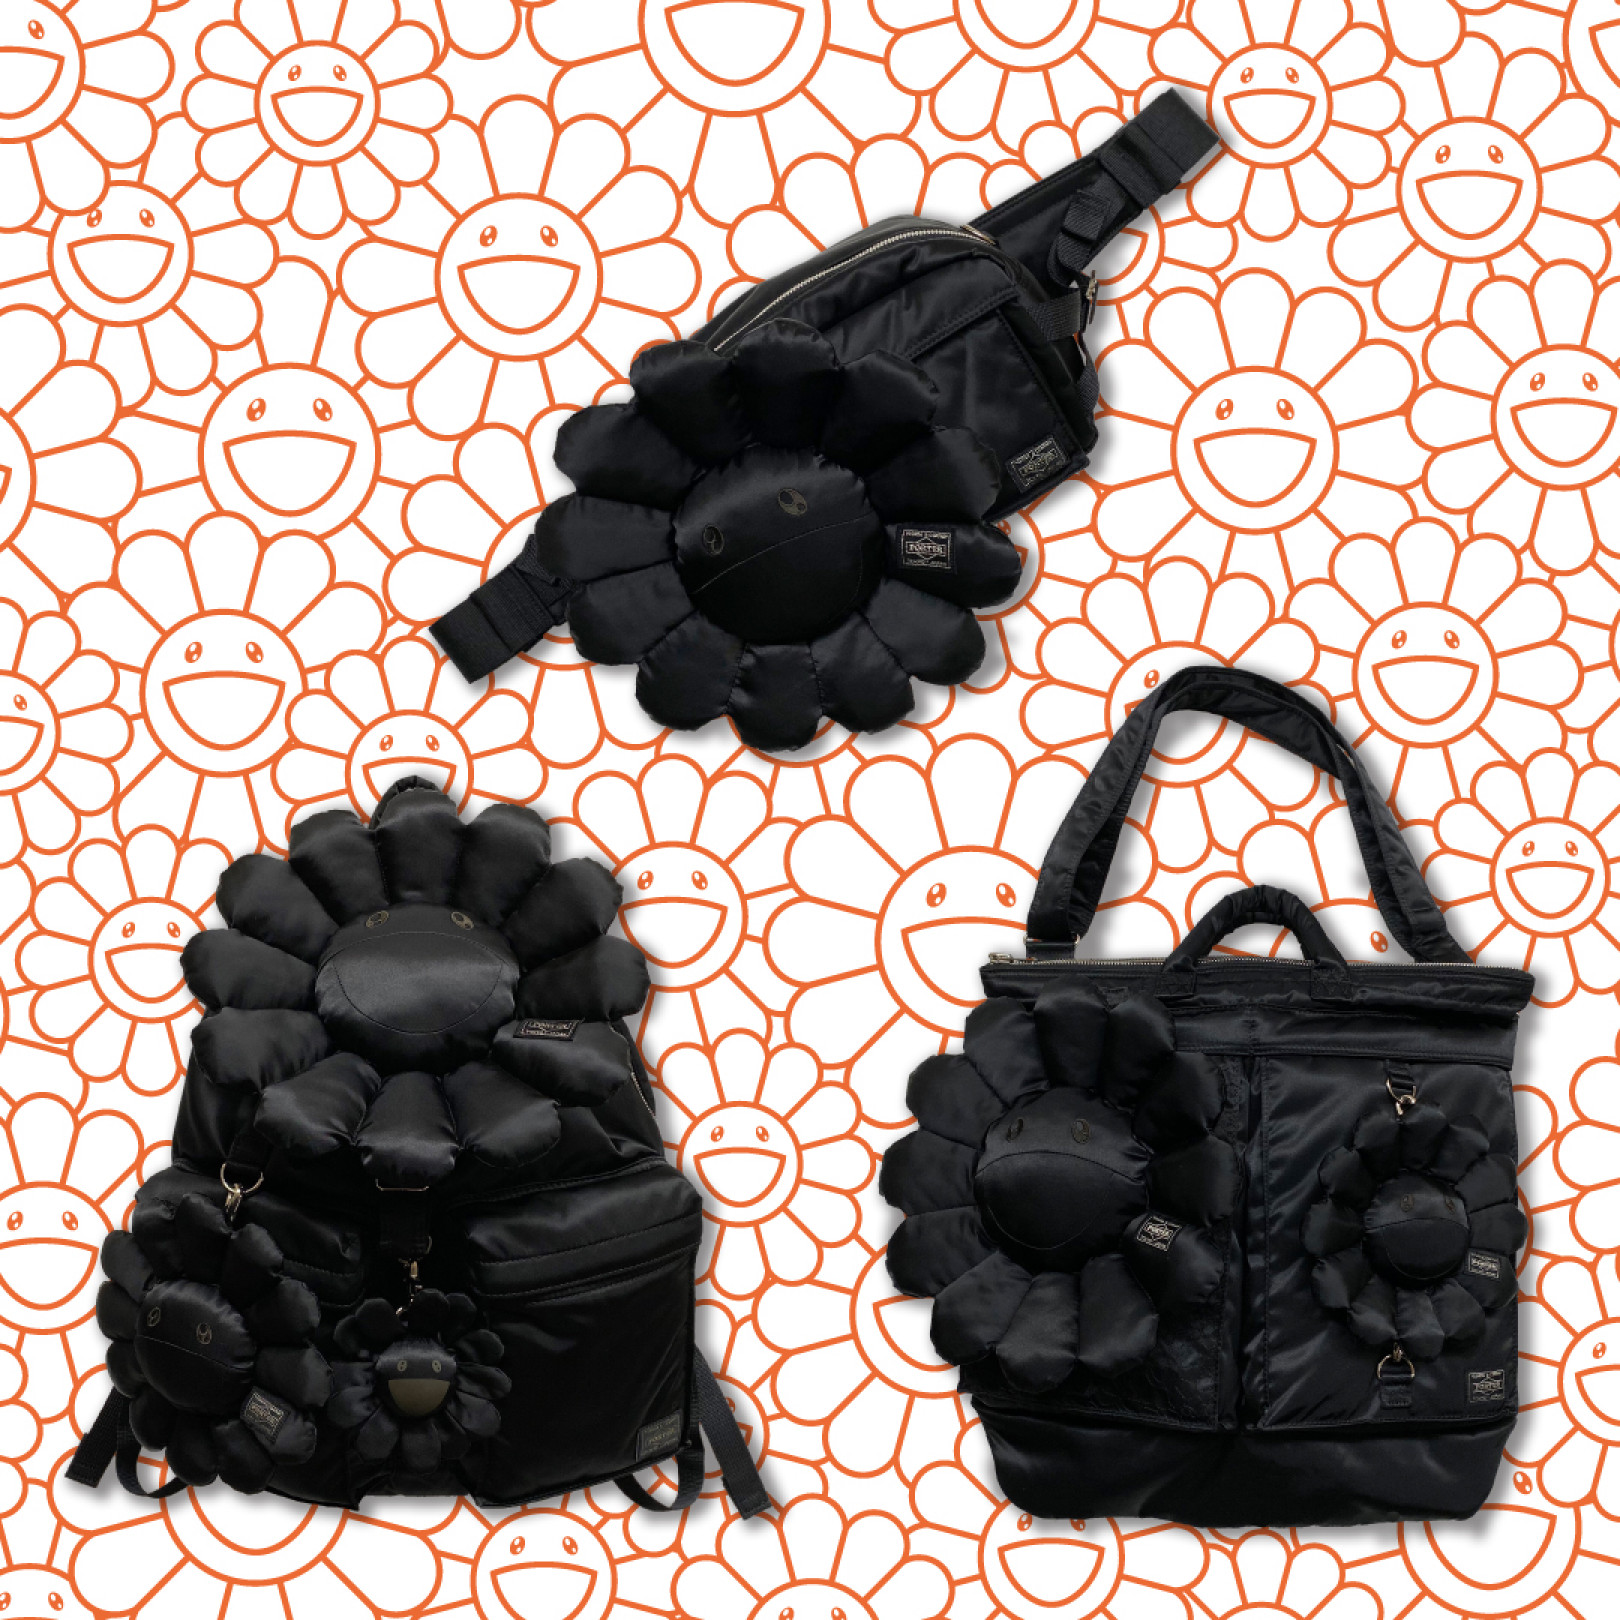 「村上隆×ポーター」コラボレーションバッグに新色のブラックが登場